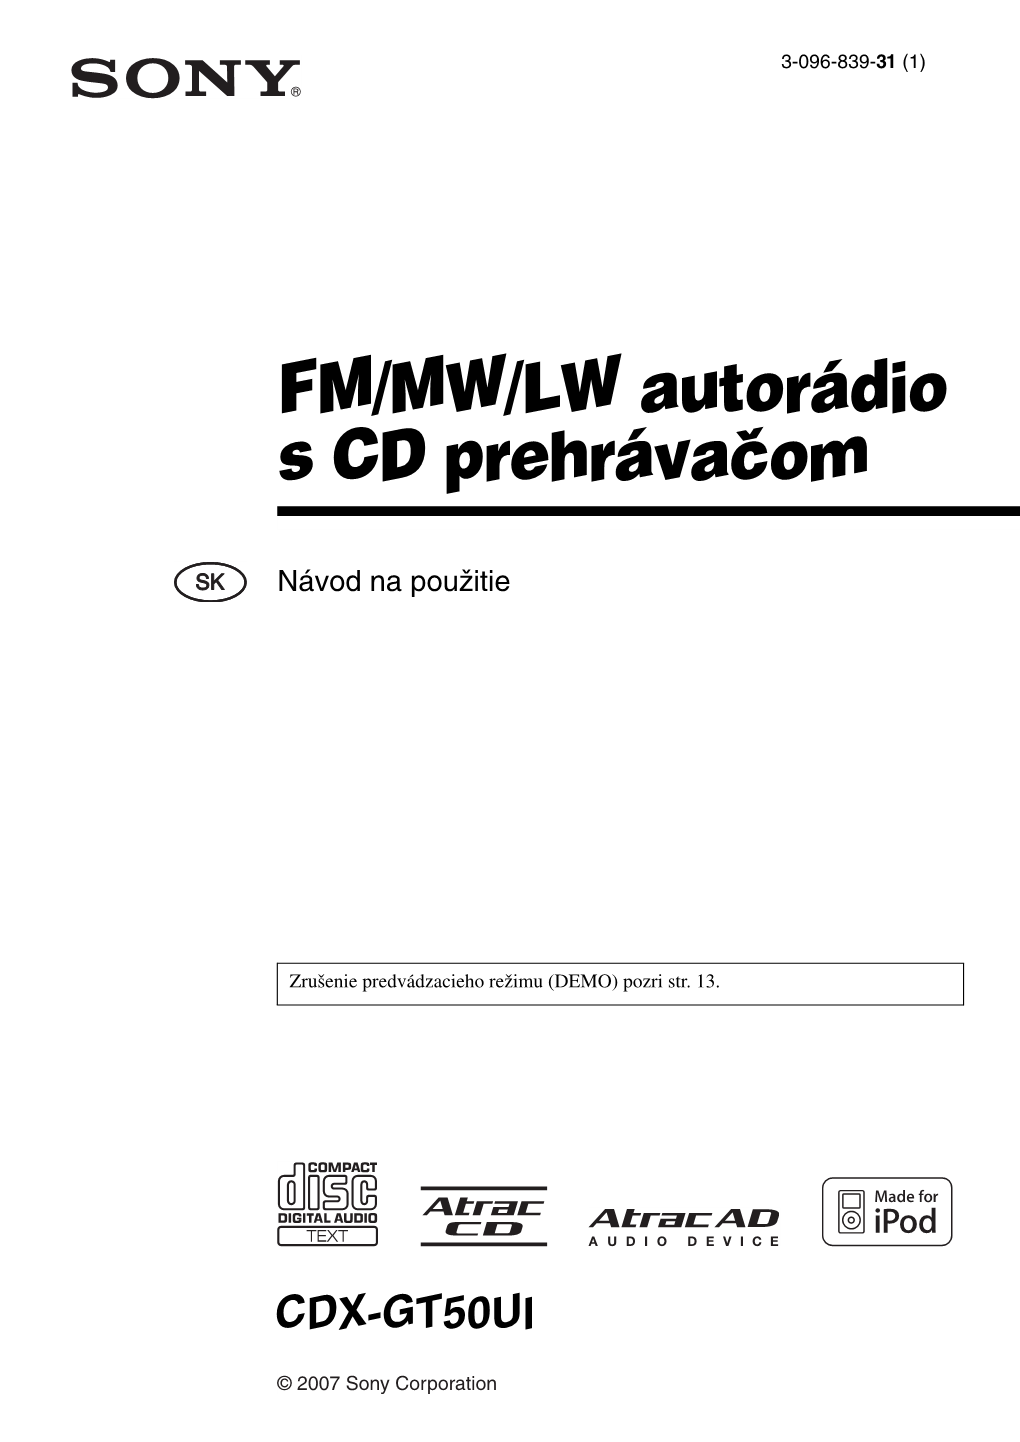 FM/MW/LW Autorádio S CD Prehrávačom